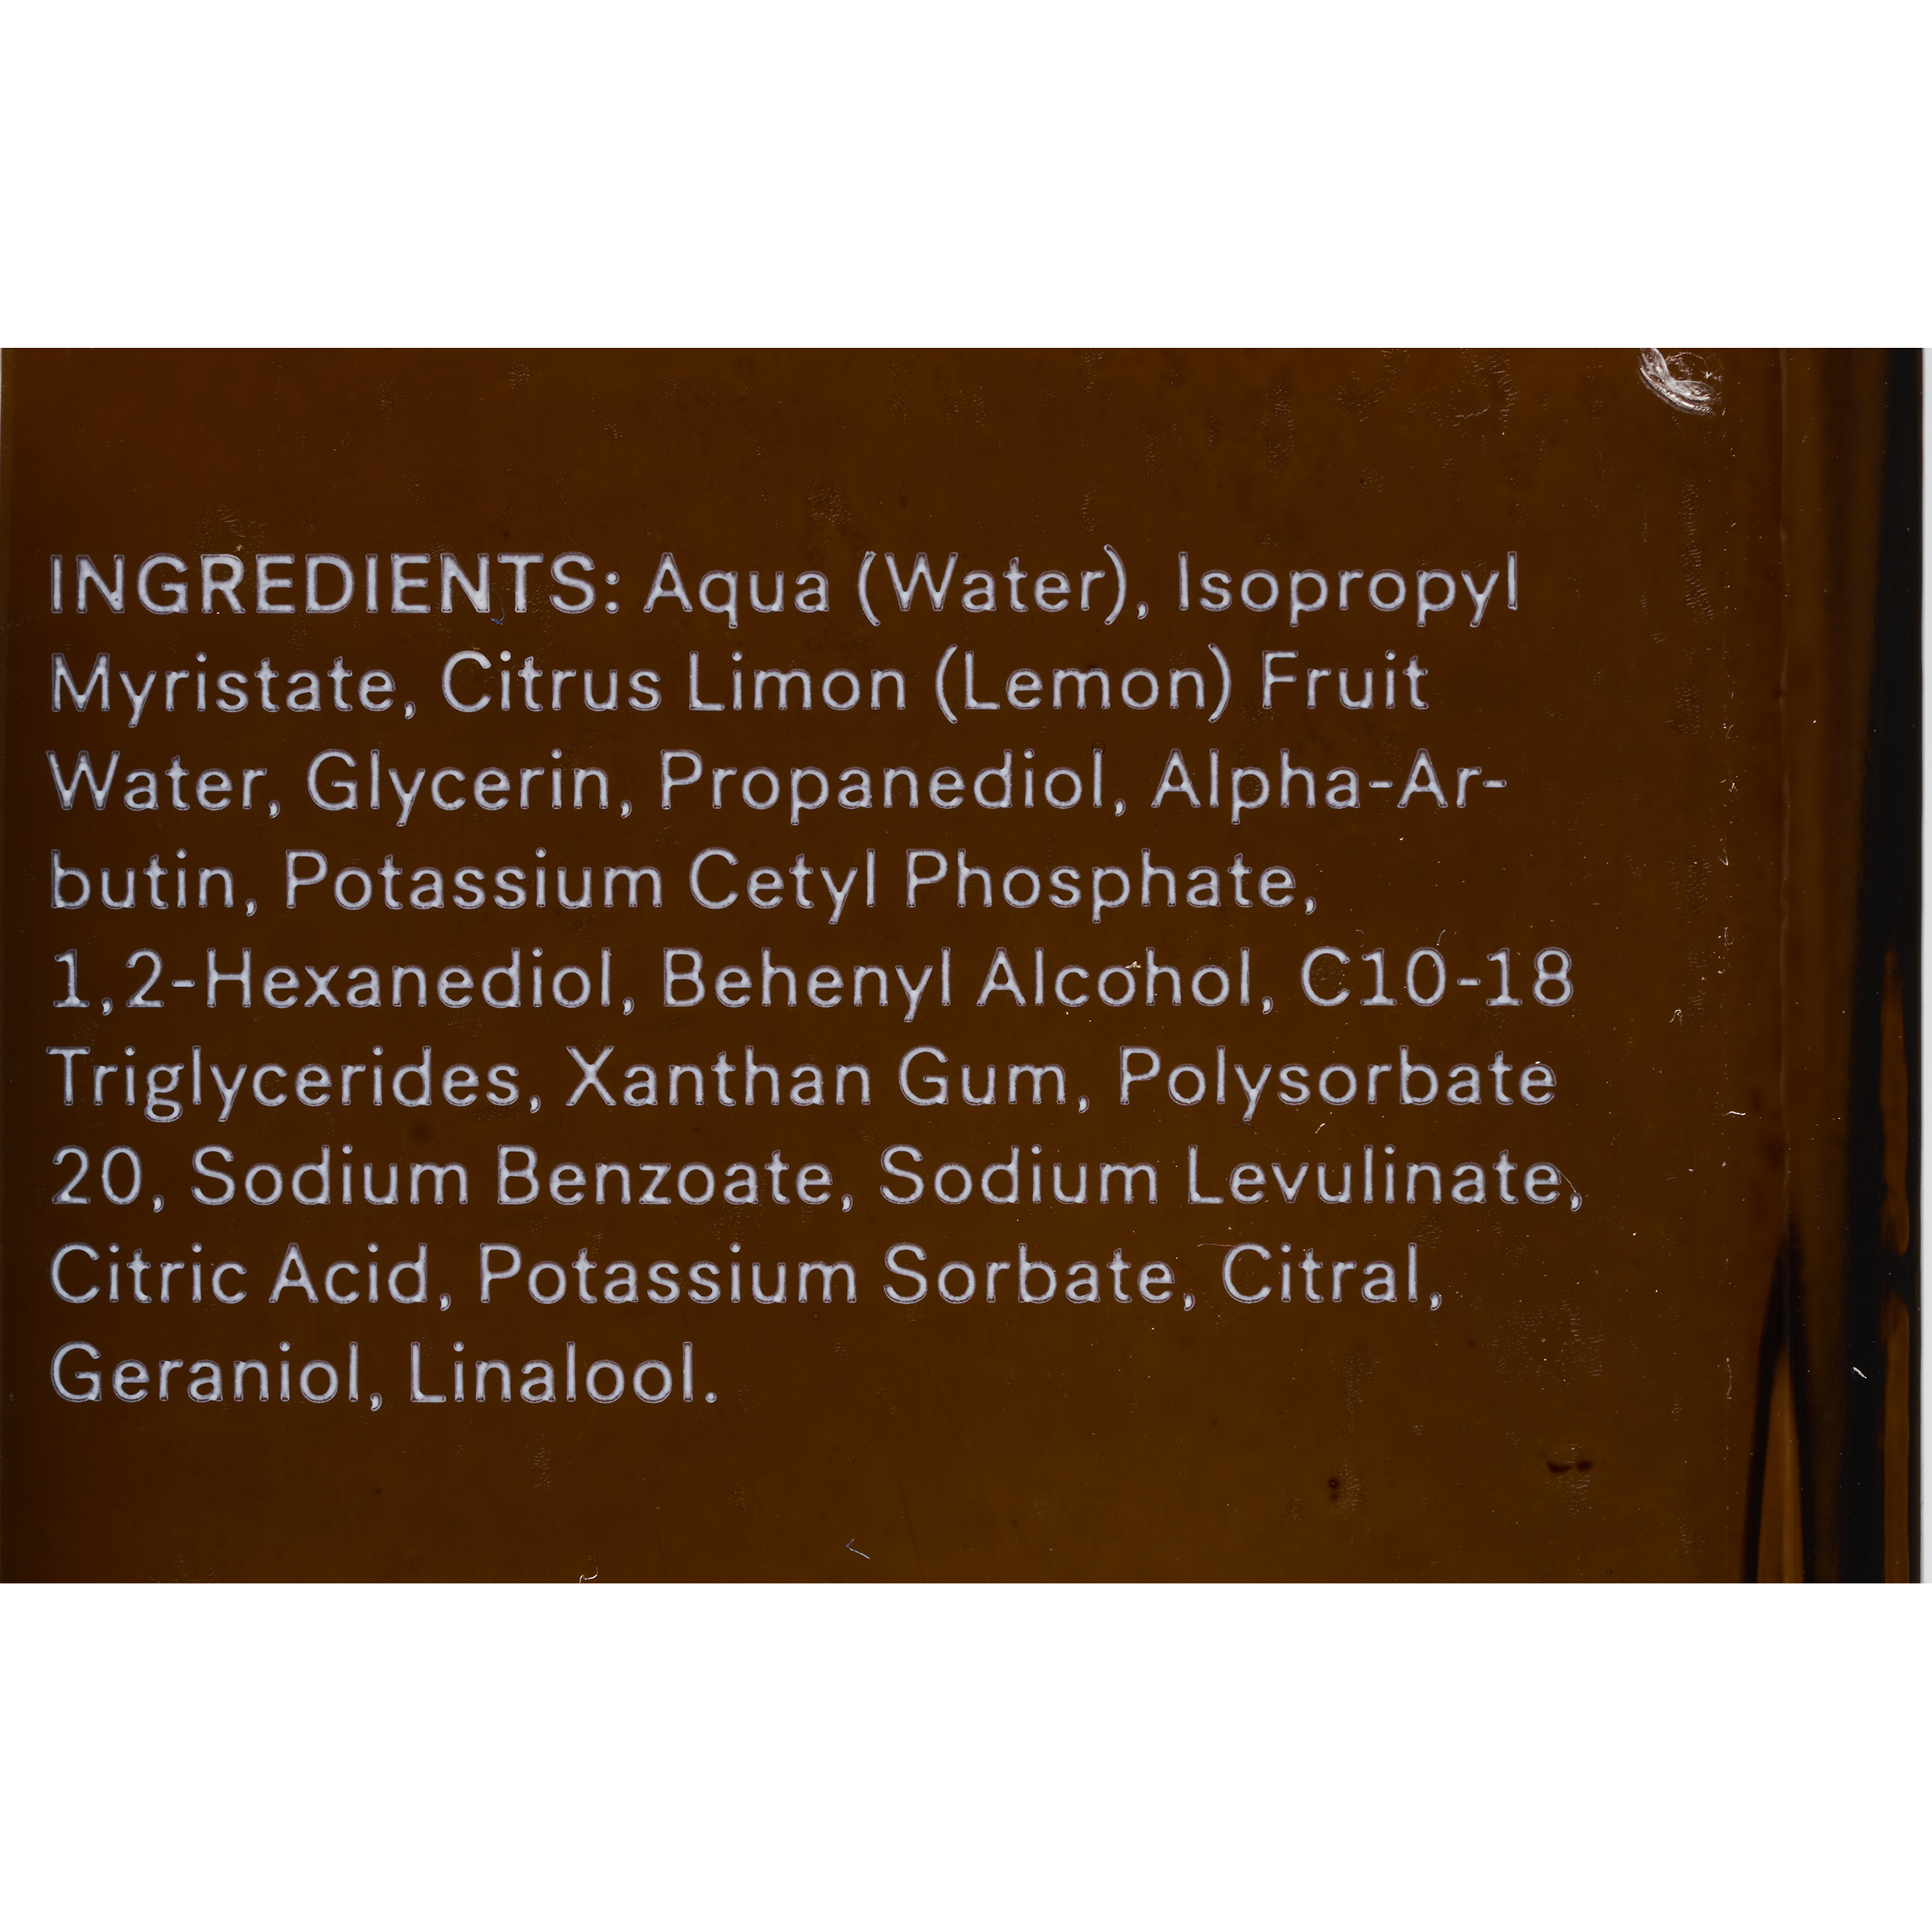 Typology « LAB-1016 » Taches pigmentaires - Liste des ingrédients